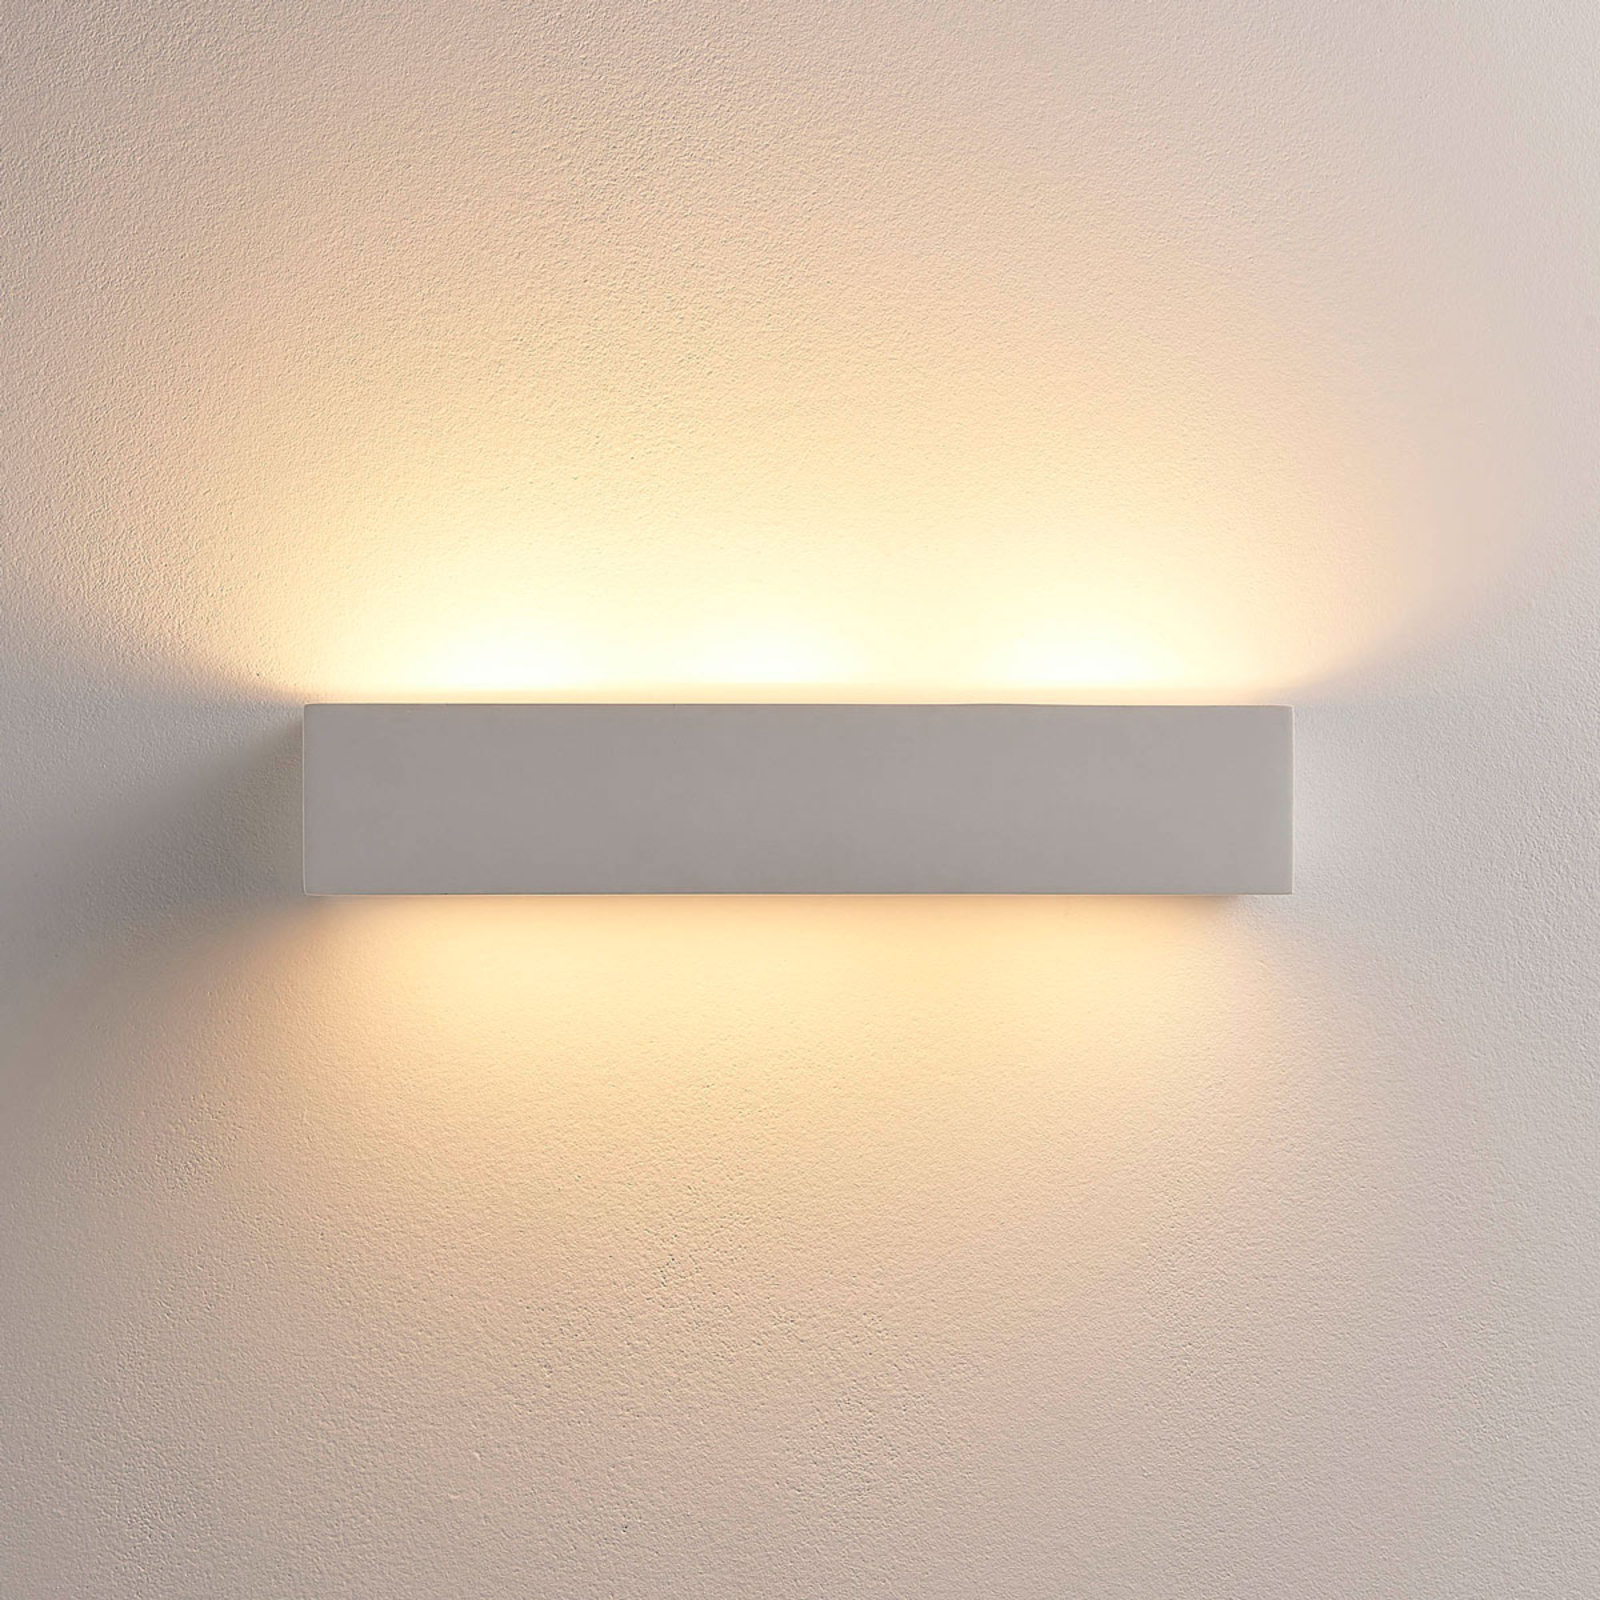 Arya - LED wall light in white plaster